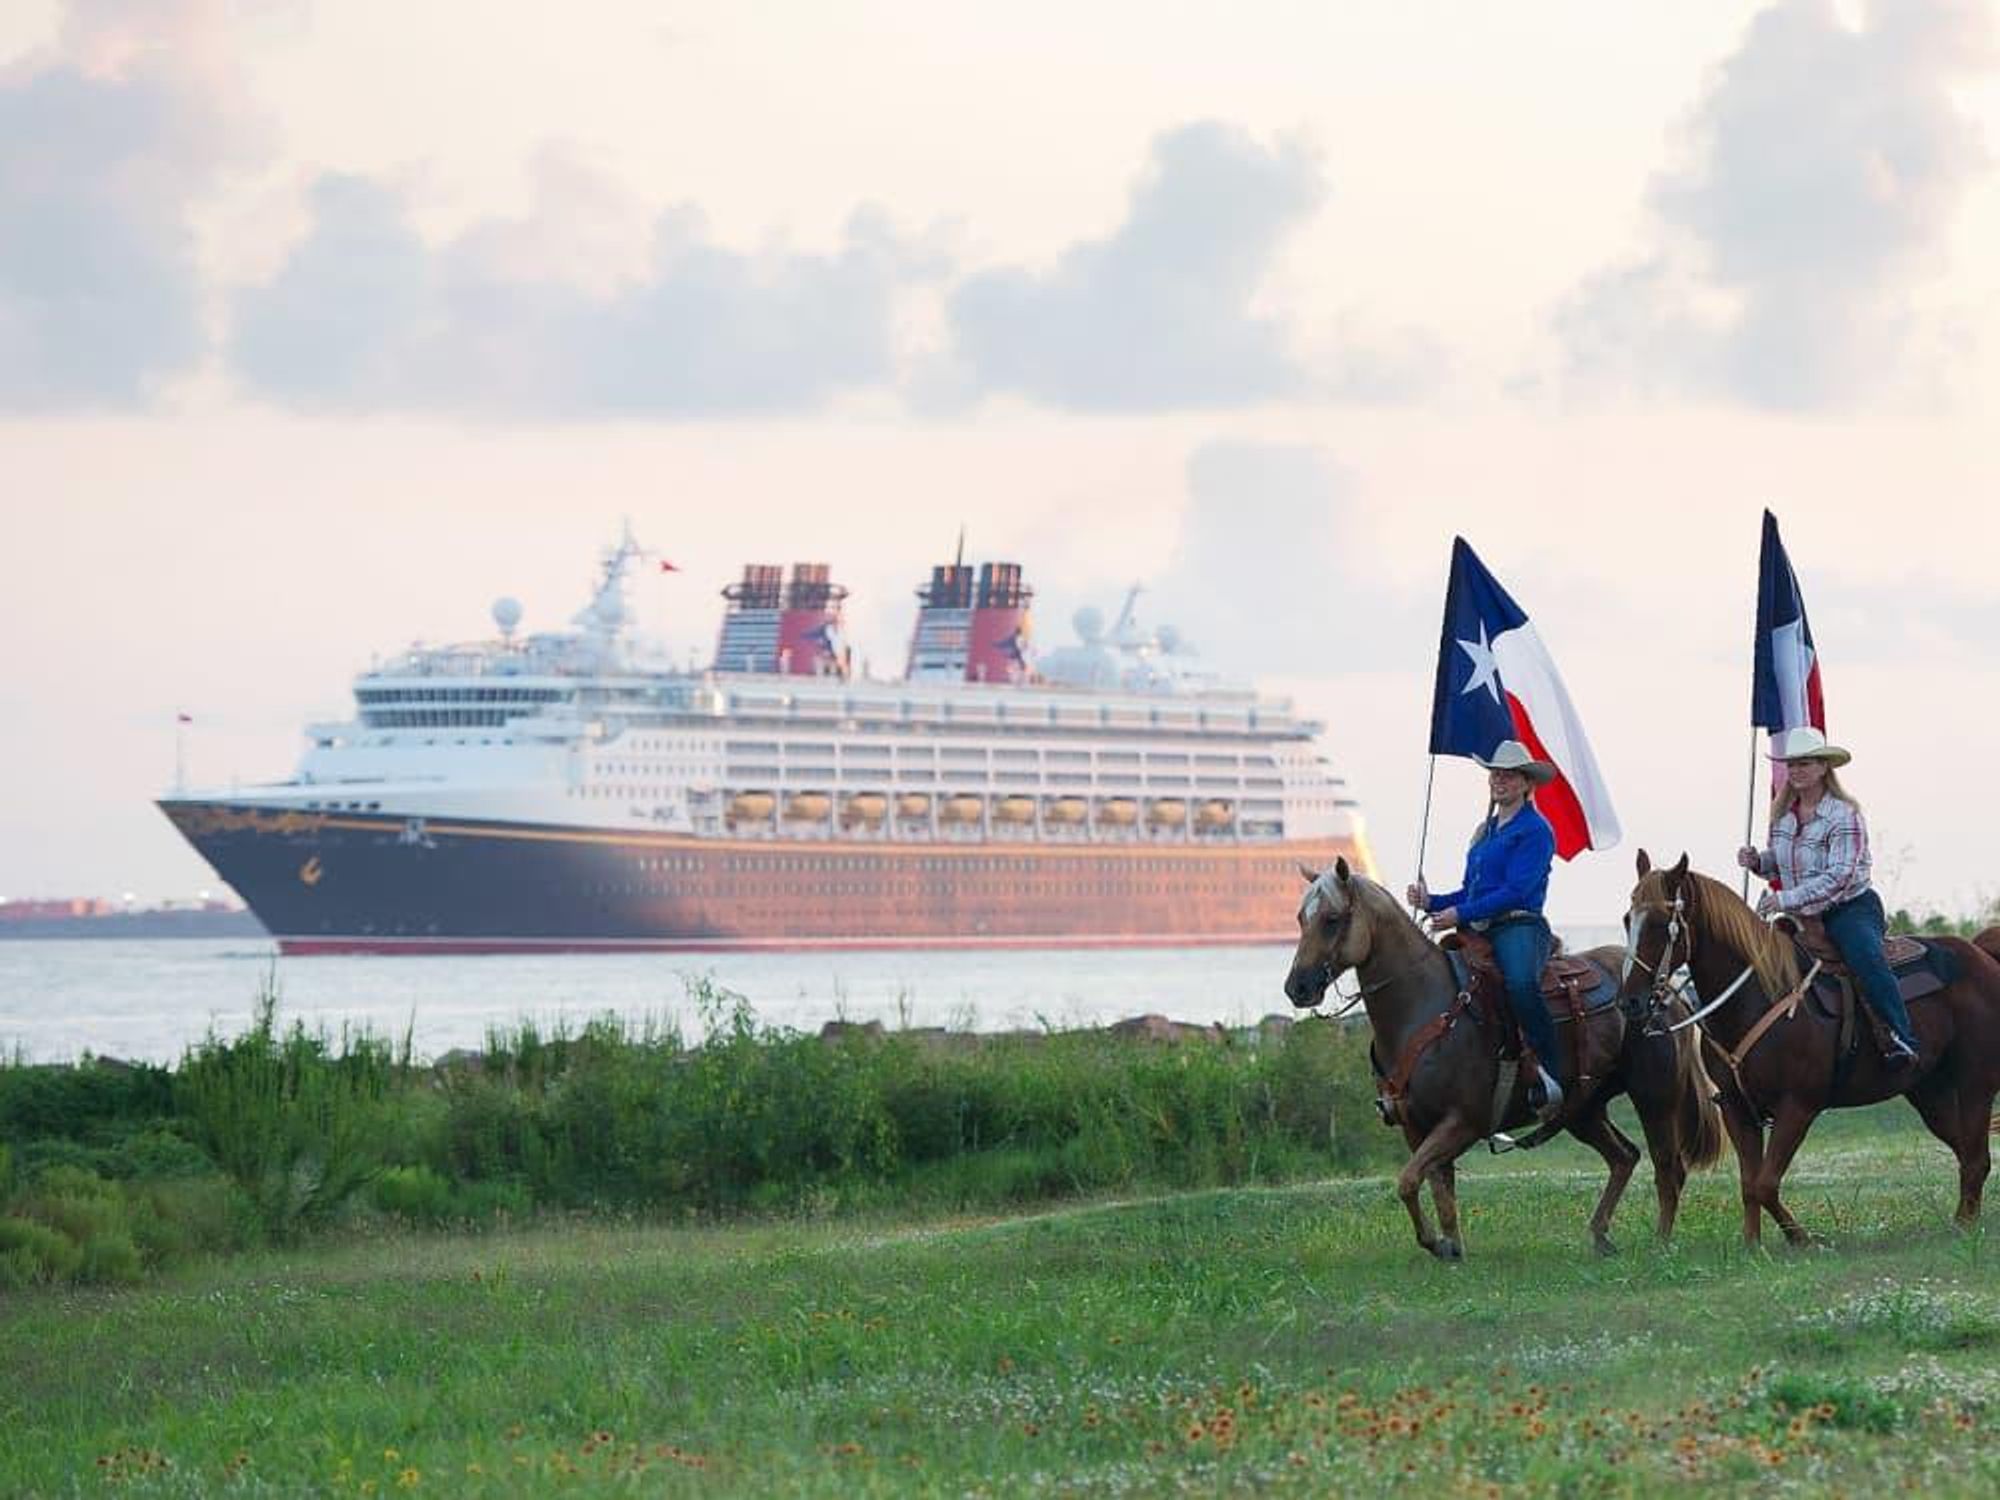 Disney Magic, cruise ship, Galveston, Texas flags, horses